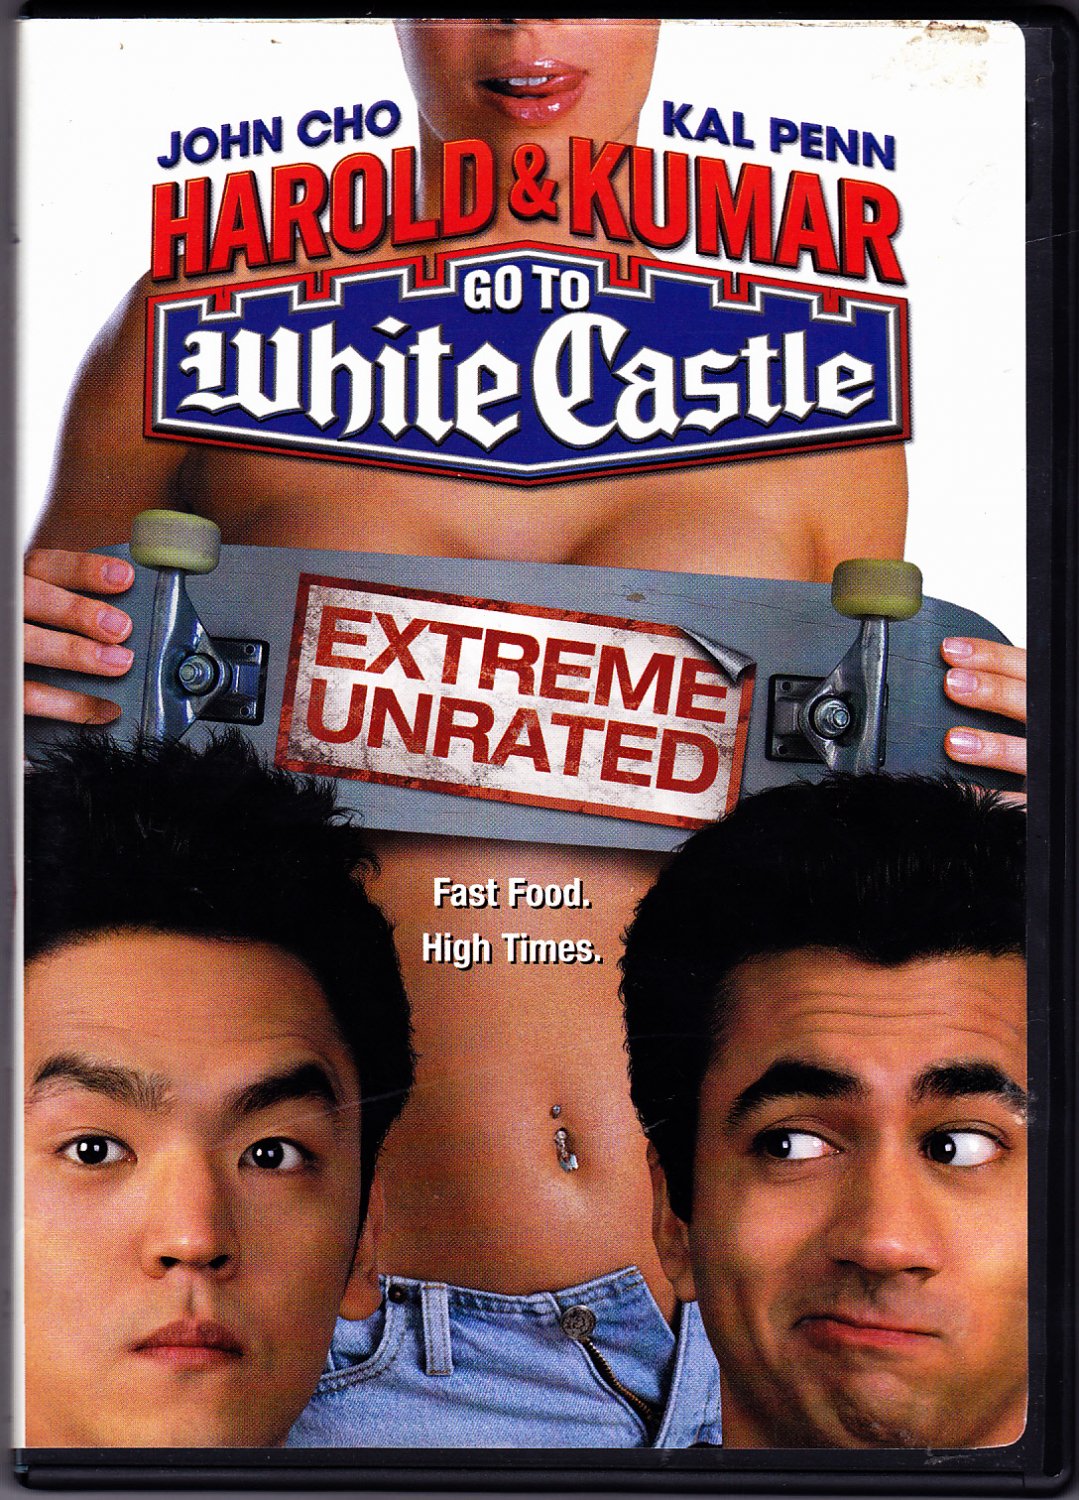 Harold & Kumar Go To White Castle DVD 2005 - Very Good